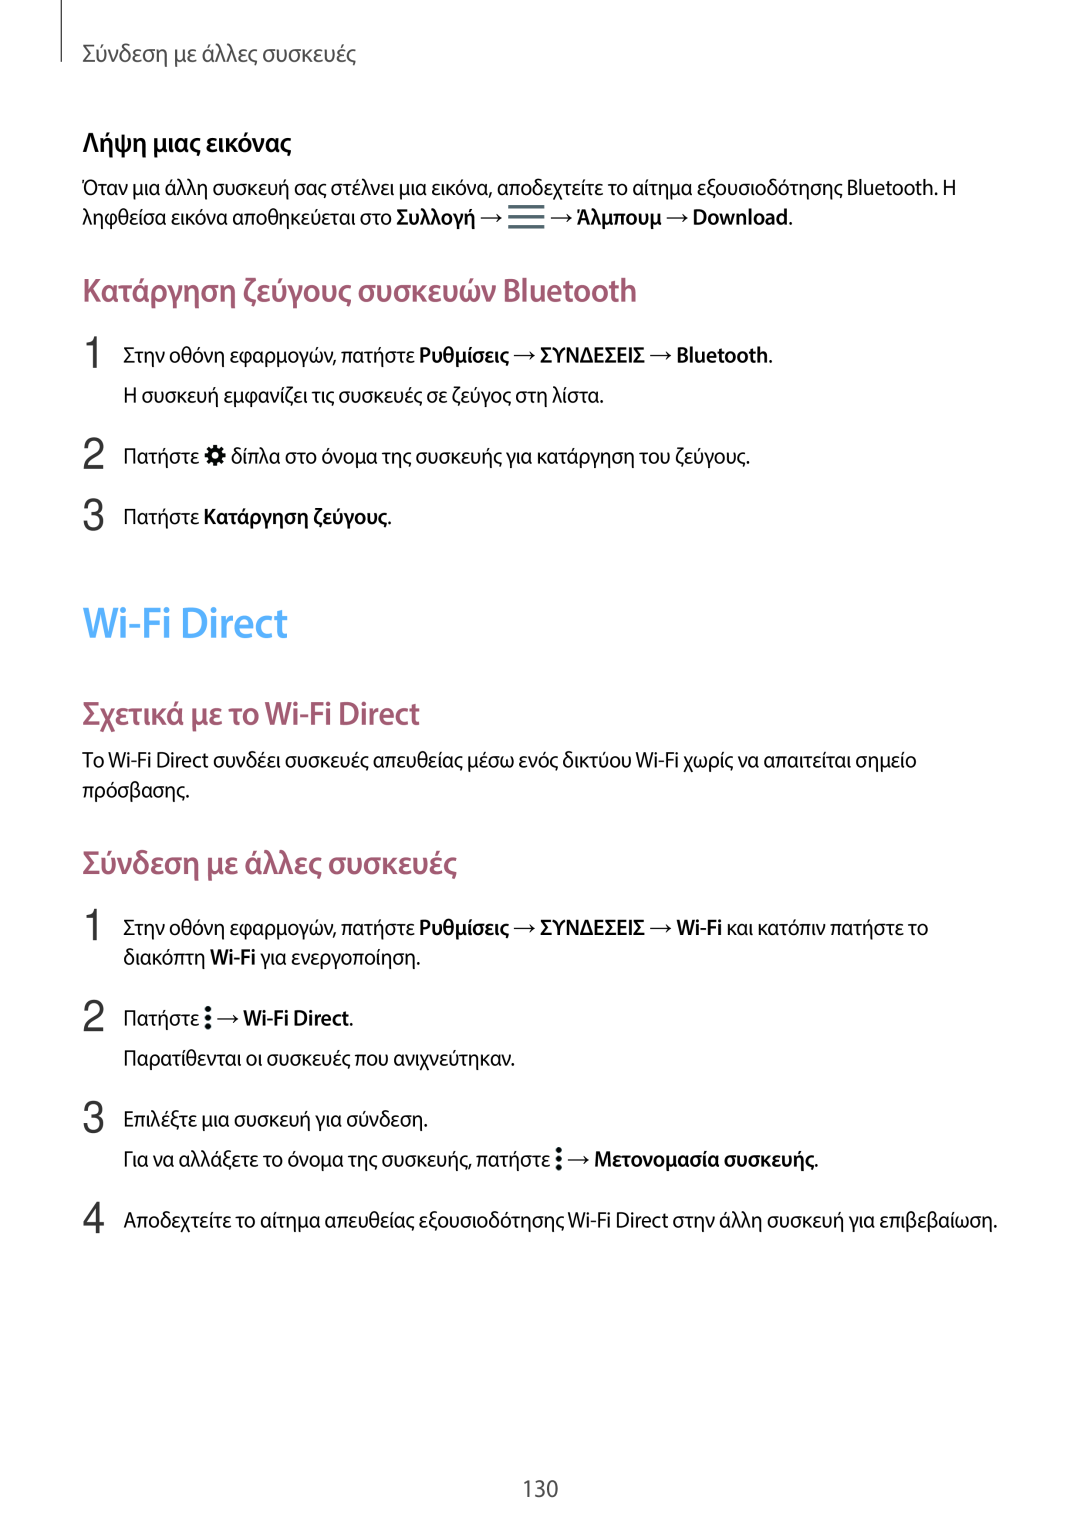 Samsung SM-T805NTSAEUR Κατάργηση ζεύγους συσκευών Bluetooth, Σχετικά με το Wi-Fi Direct, Σύνδεση με άλλες συσκευές 